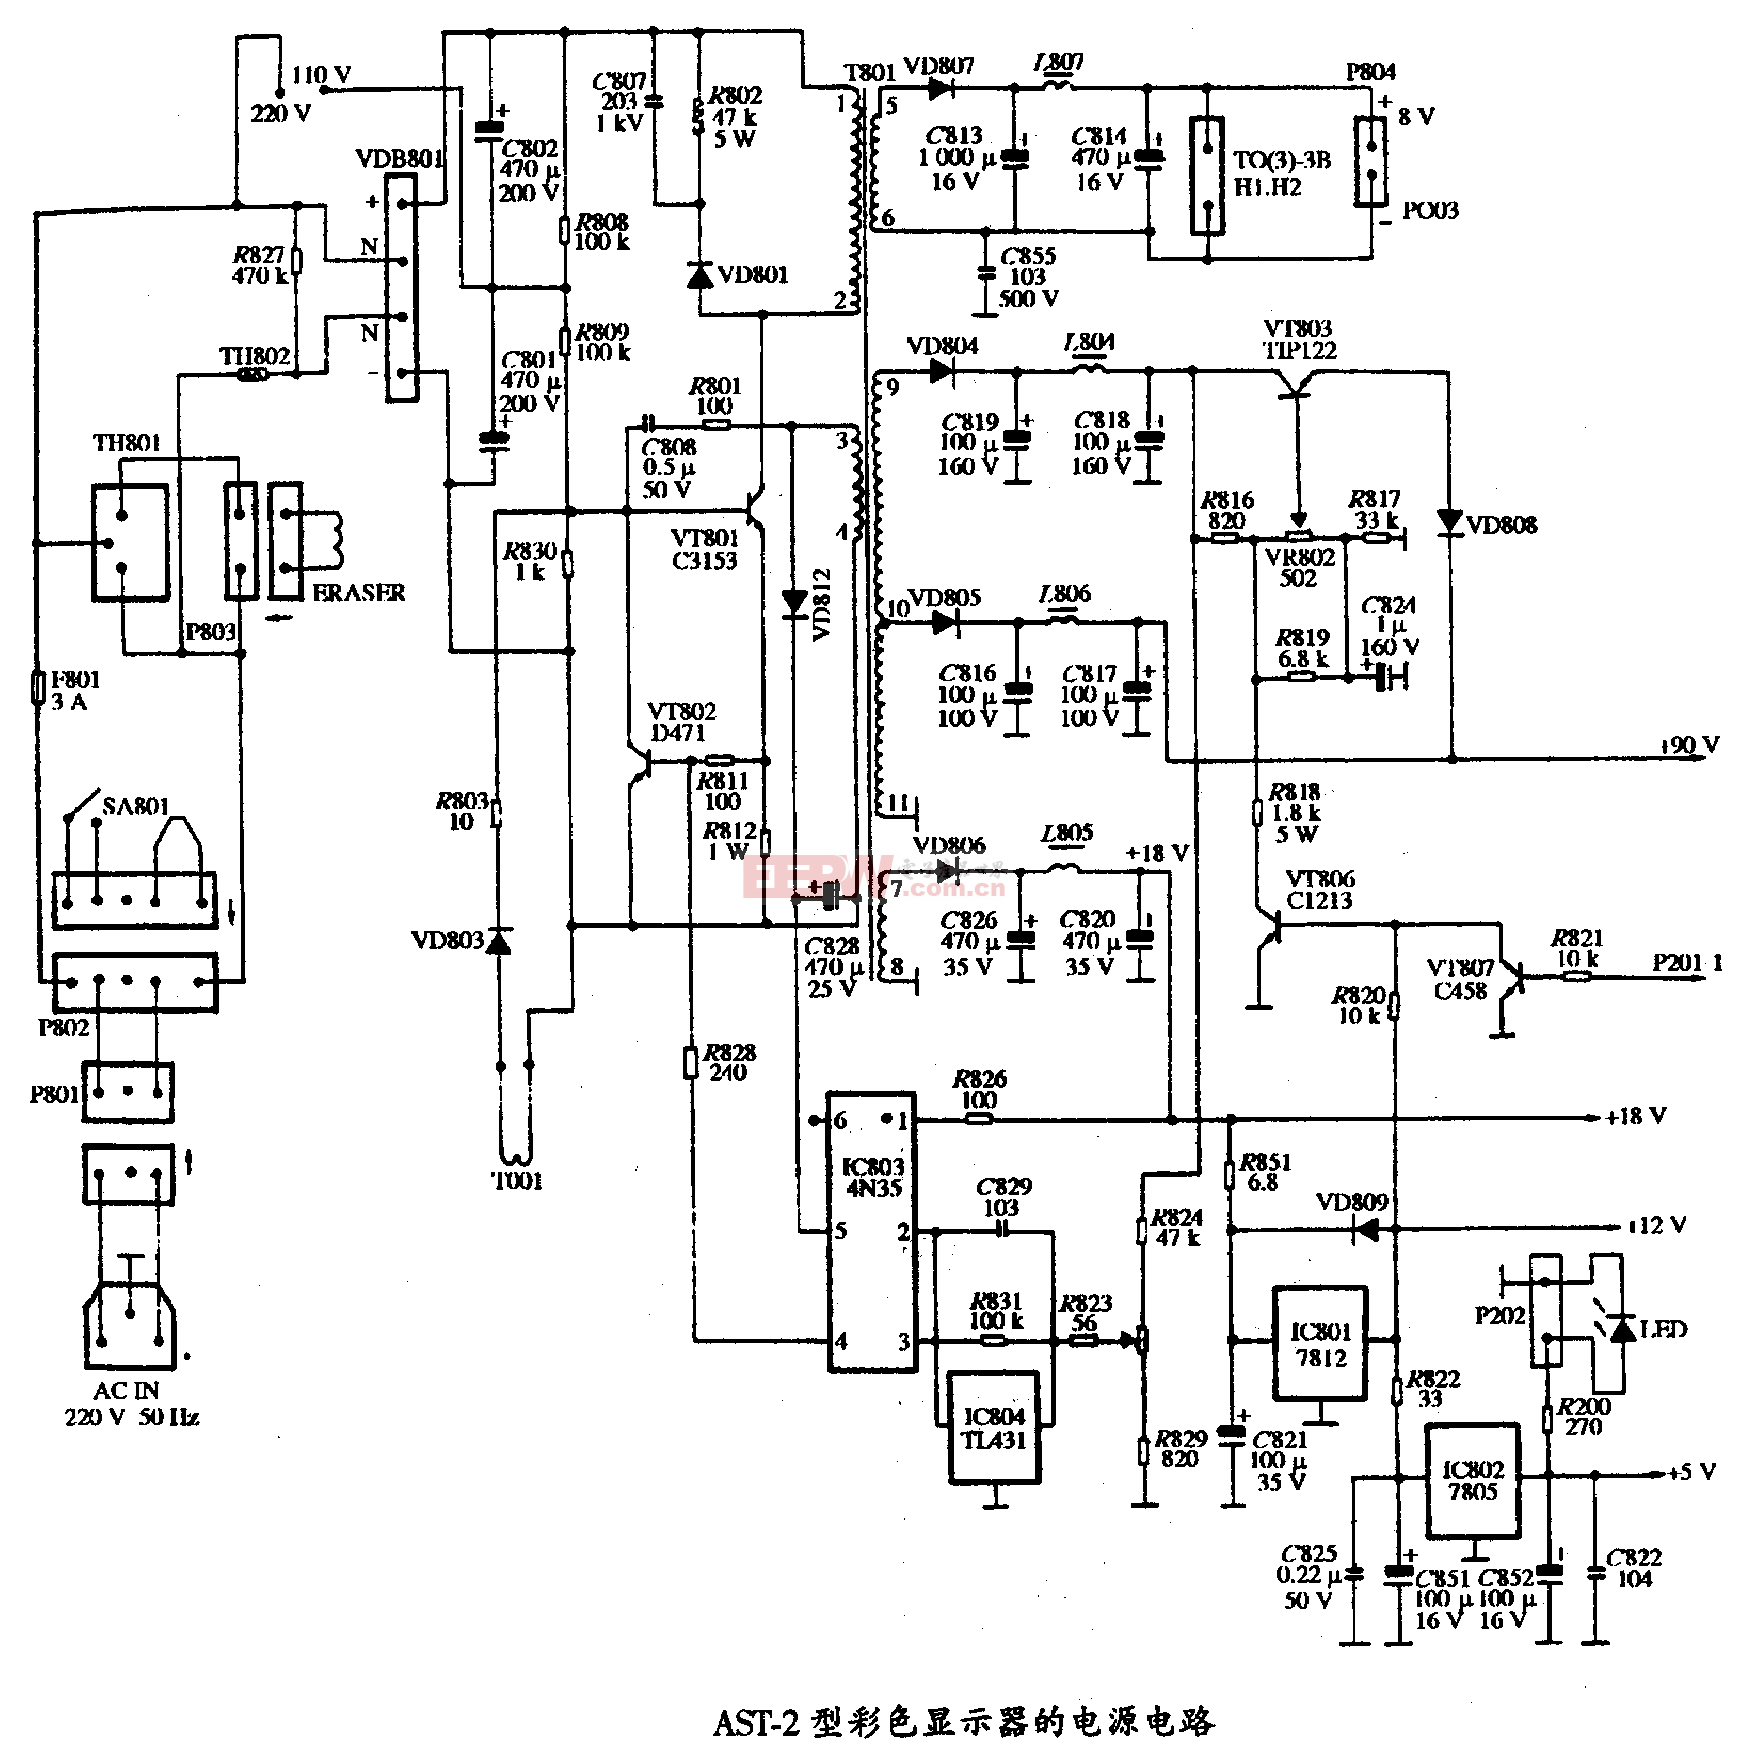 6、AST-2型彩色显示器的电源电路图